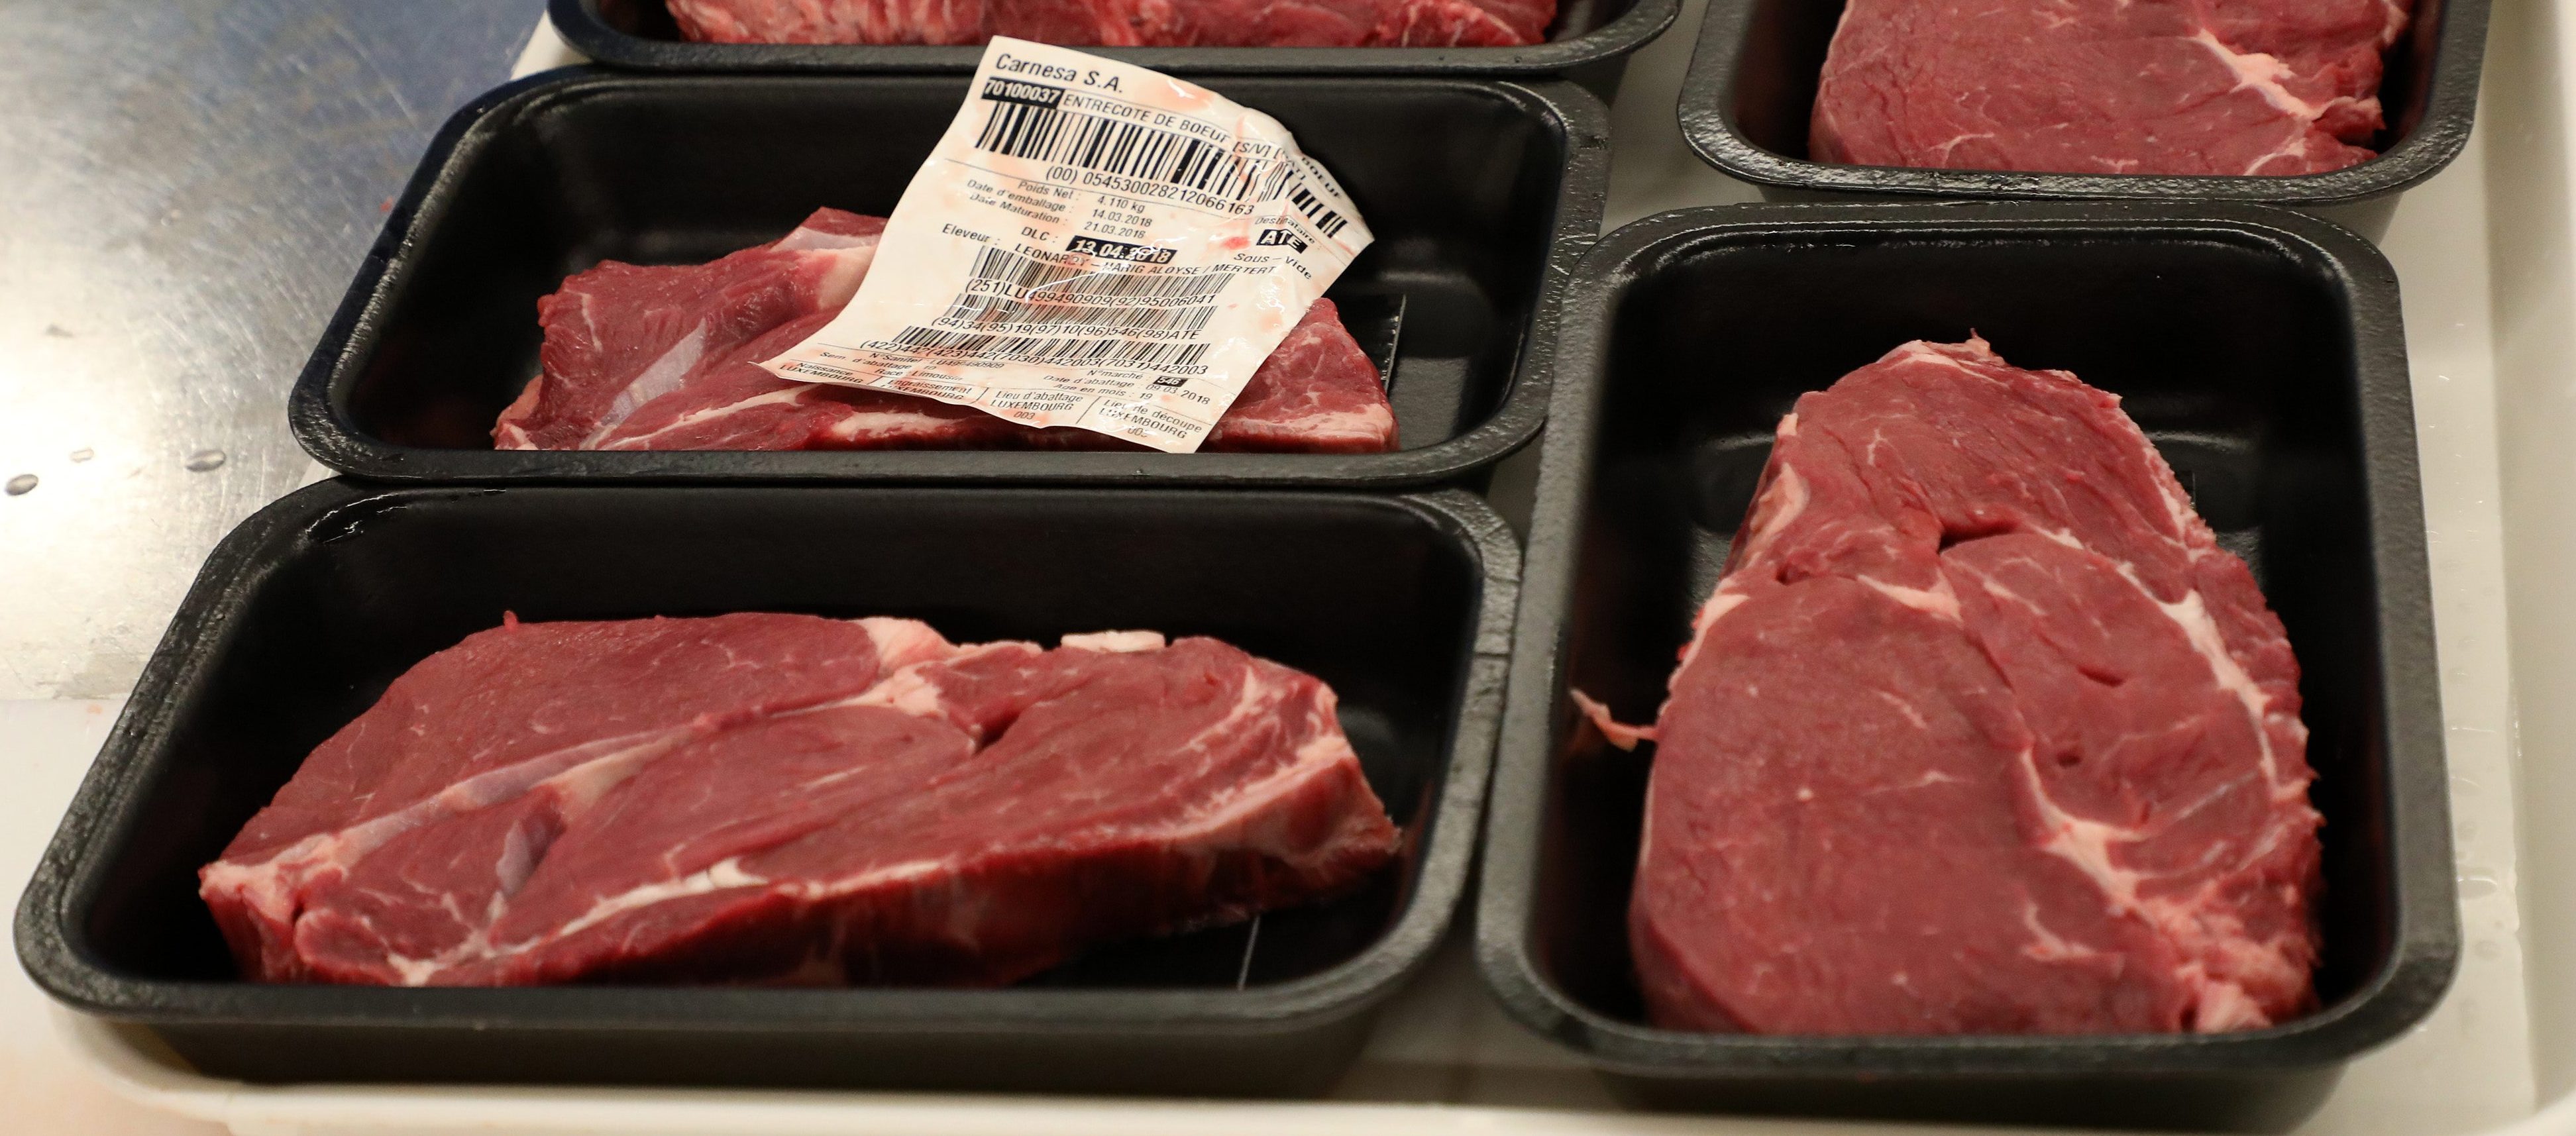 Lebensmittelsicherheit: Verseuchtes „Wilke“-Fleisch in Luxemburg aus dem Verkehr gezogen